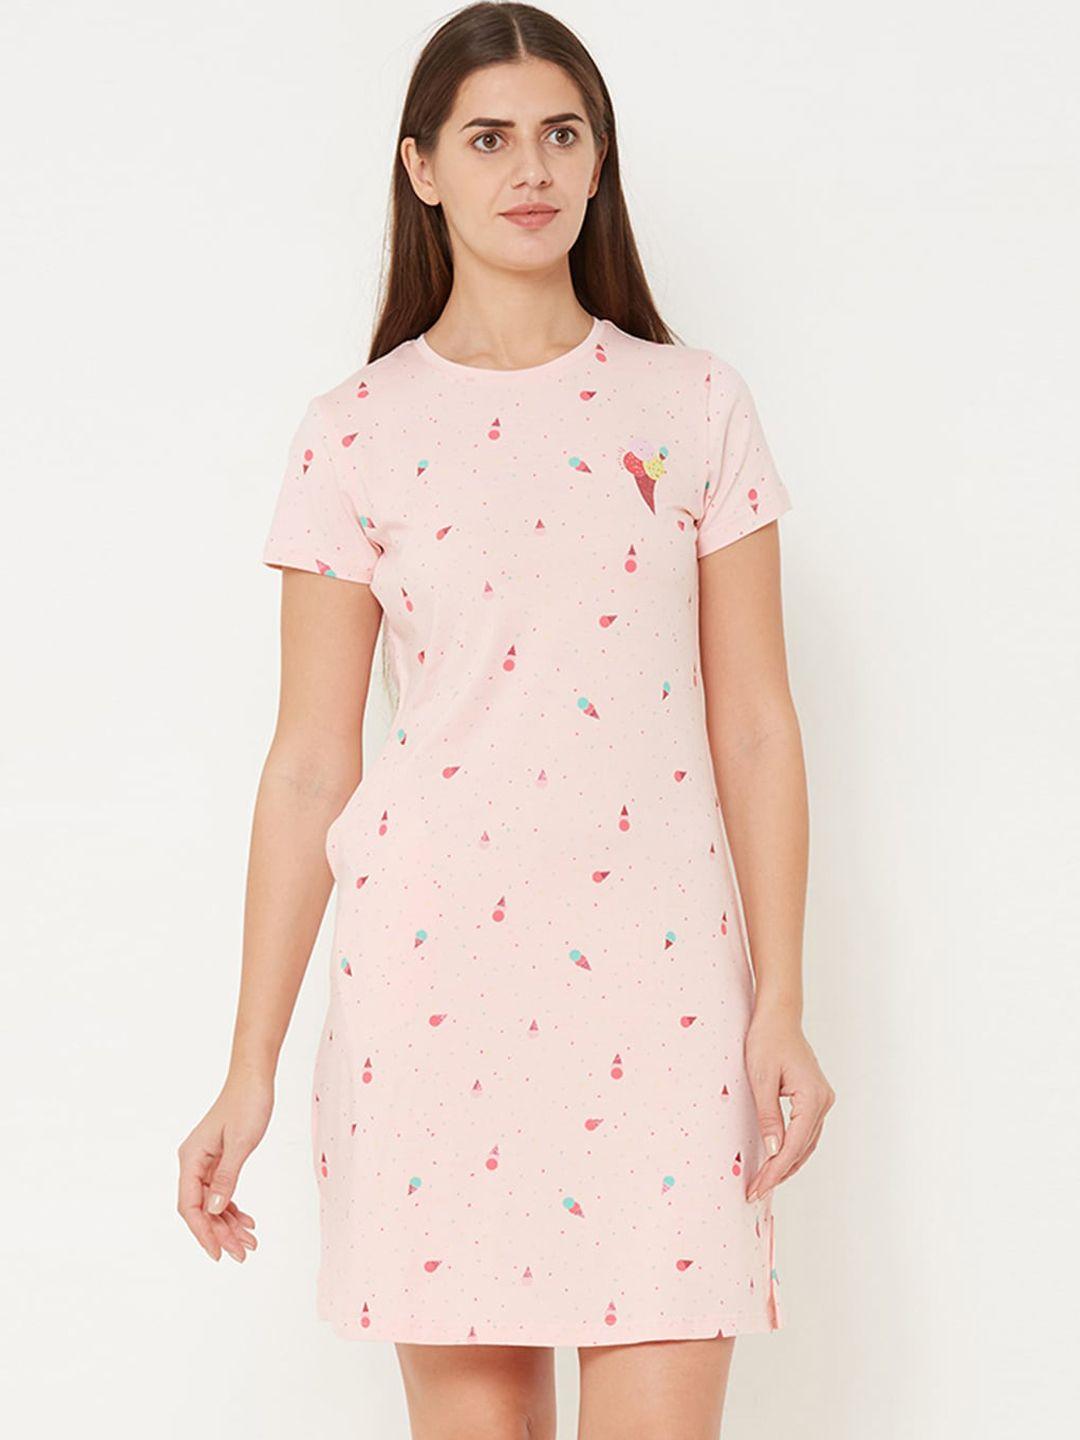 sweet-dreams-pink-printed-nightdress